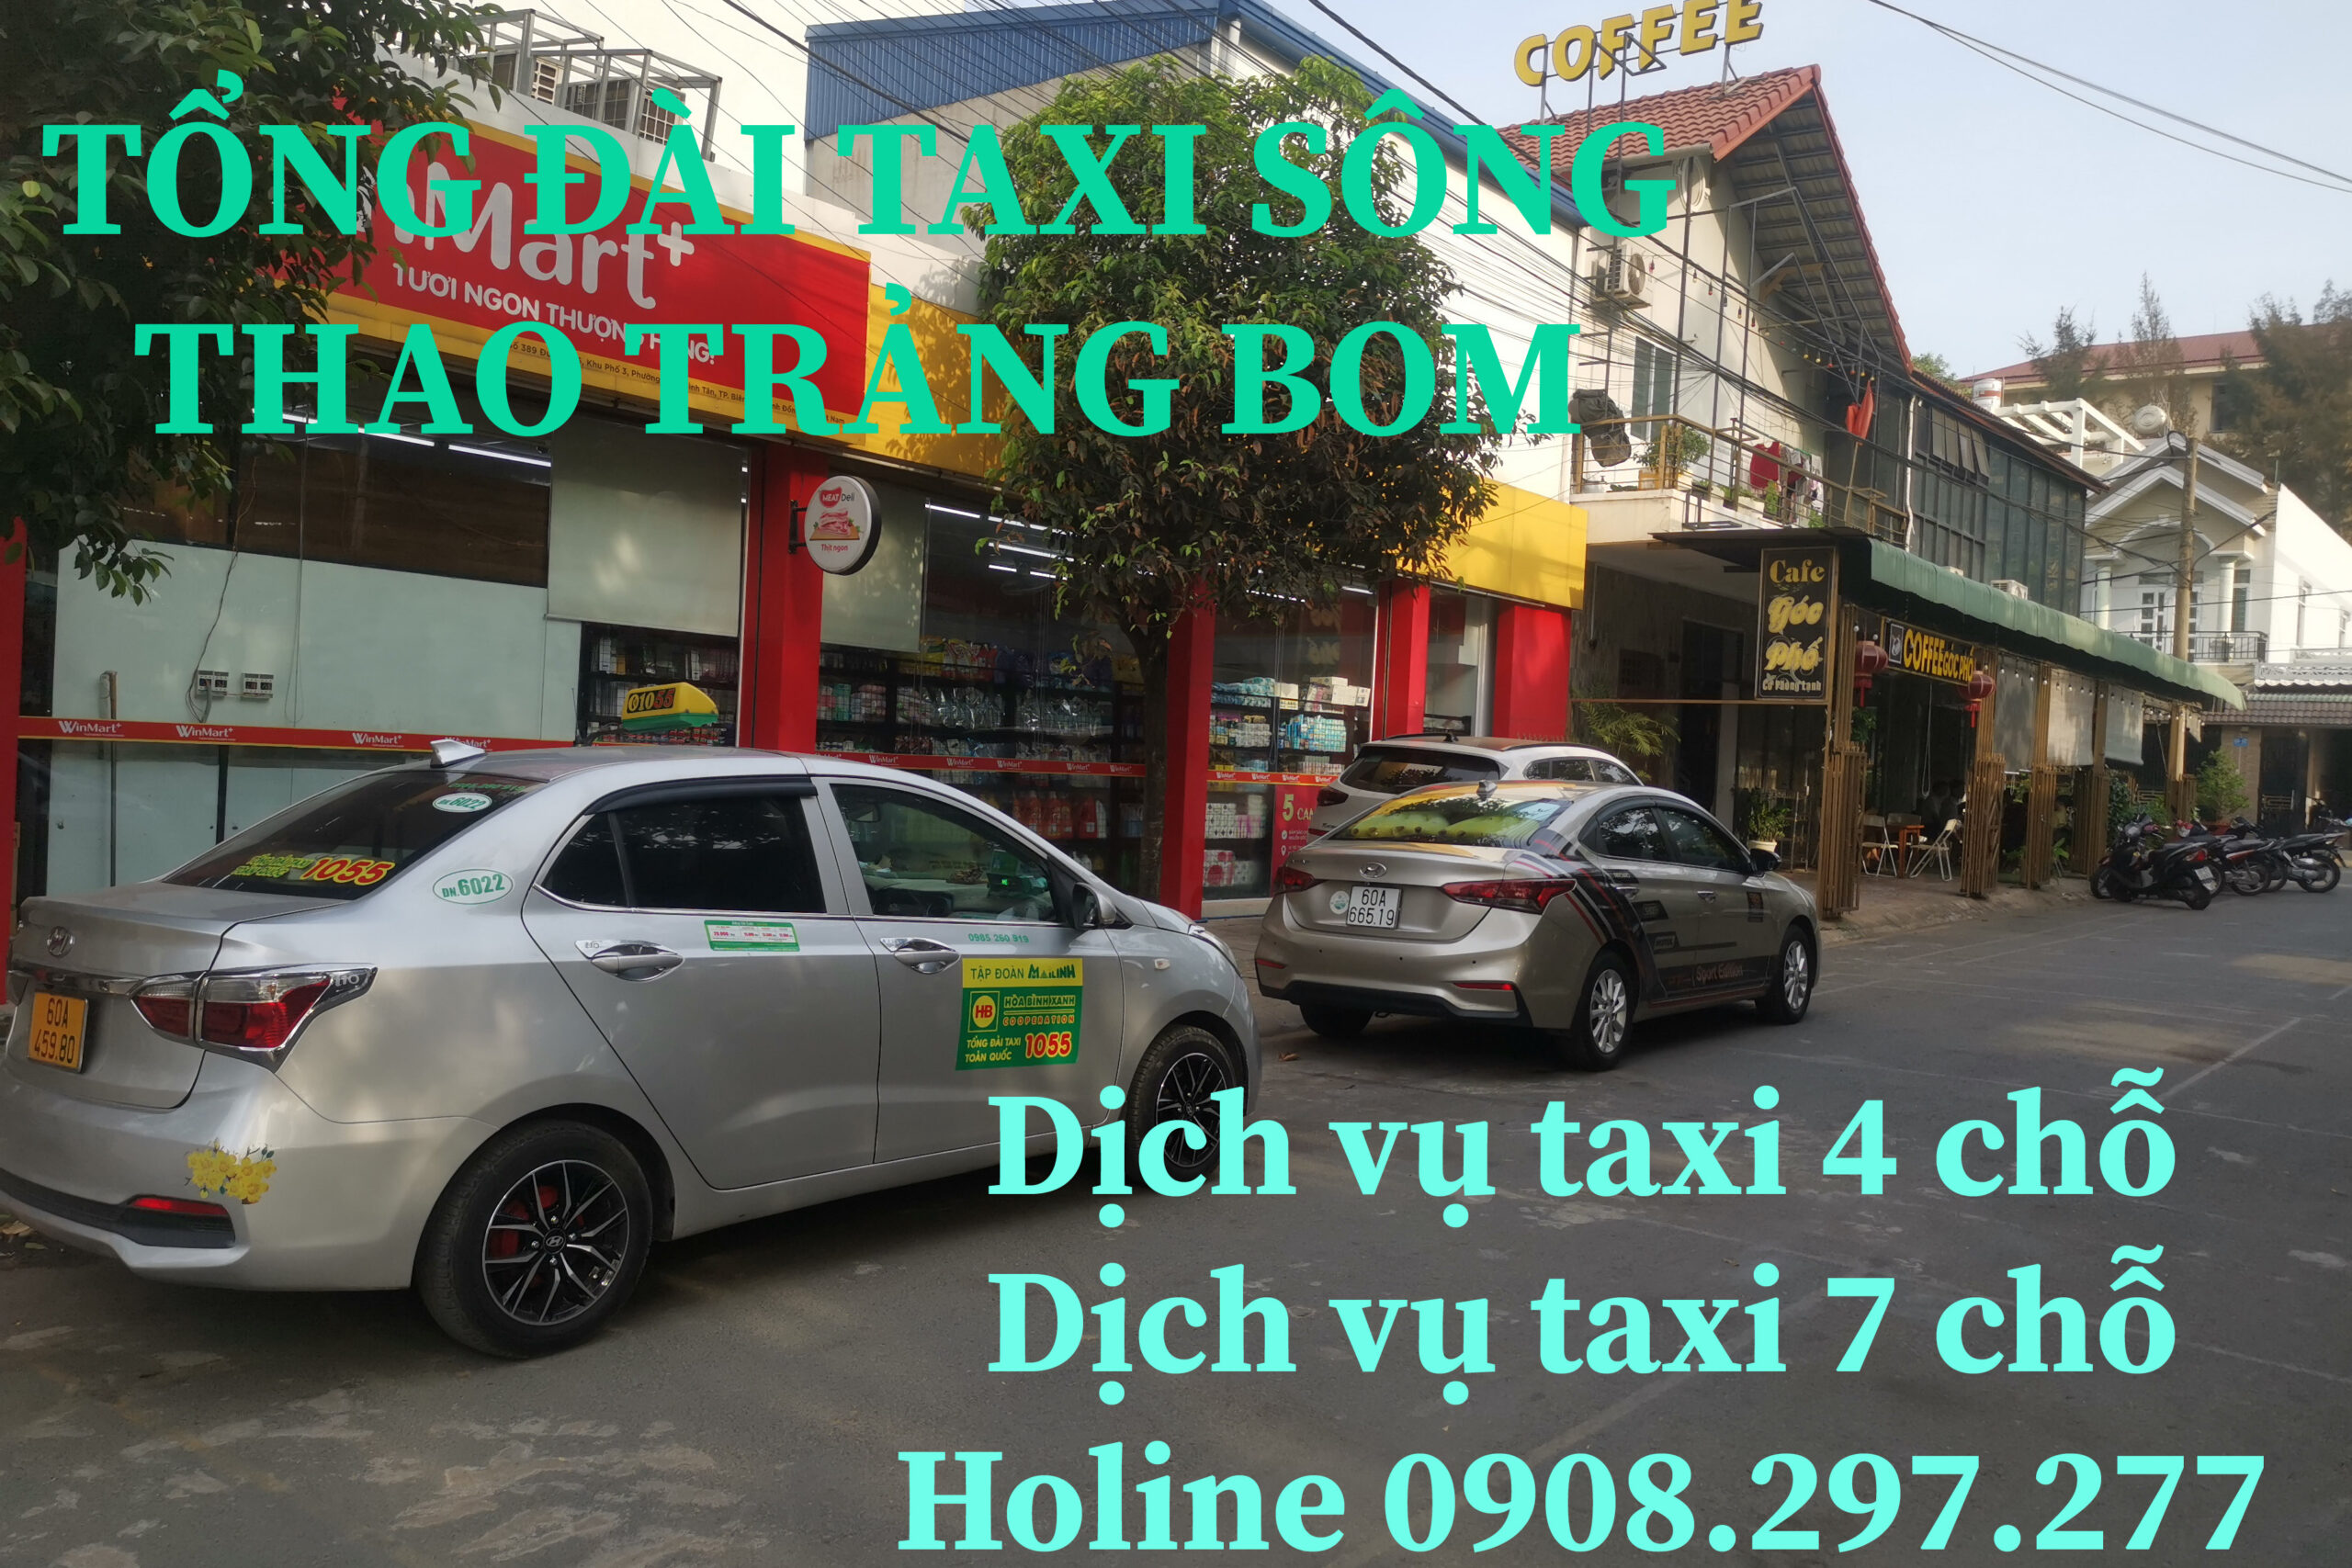 Tổng đài taxi Sông Thao Trảng Bom 